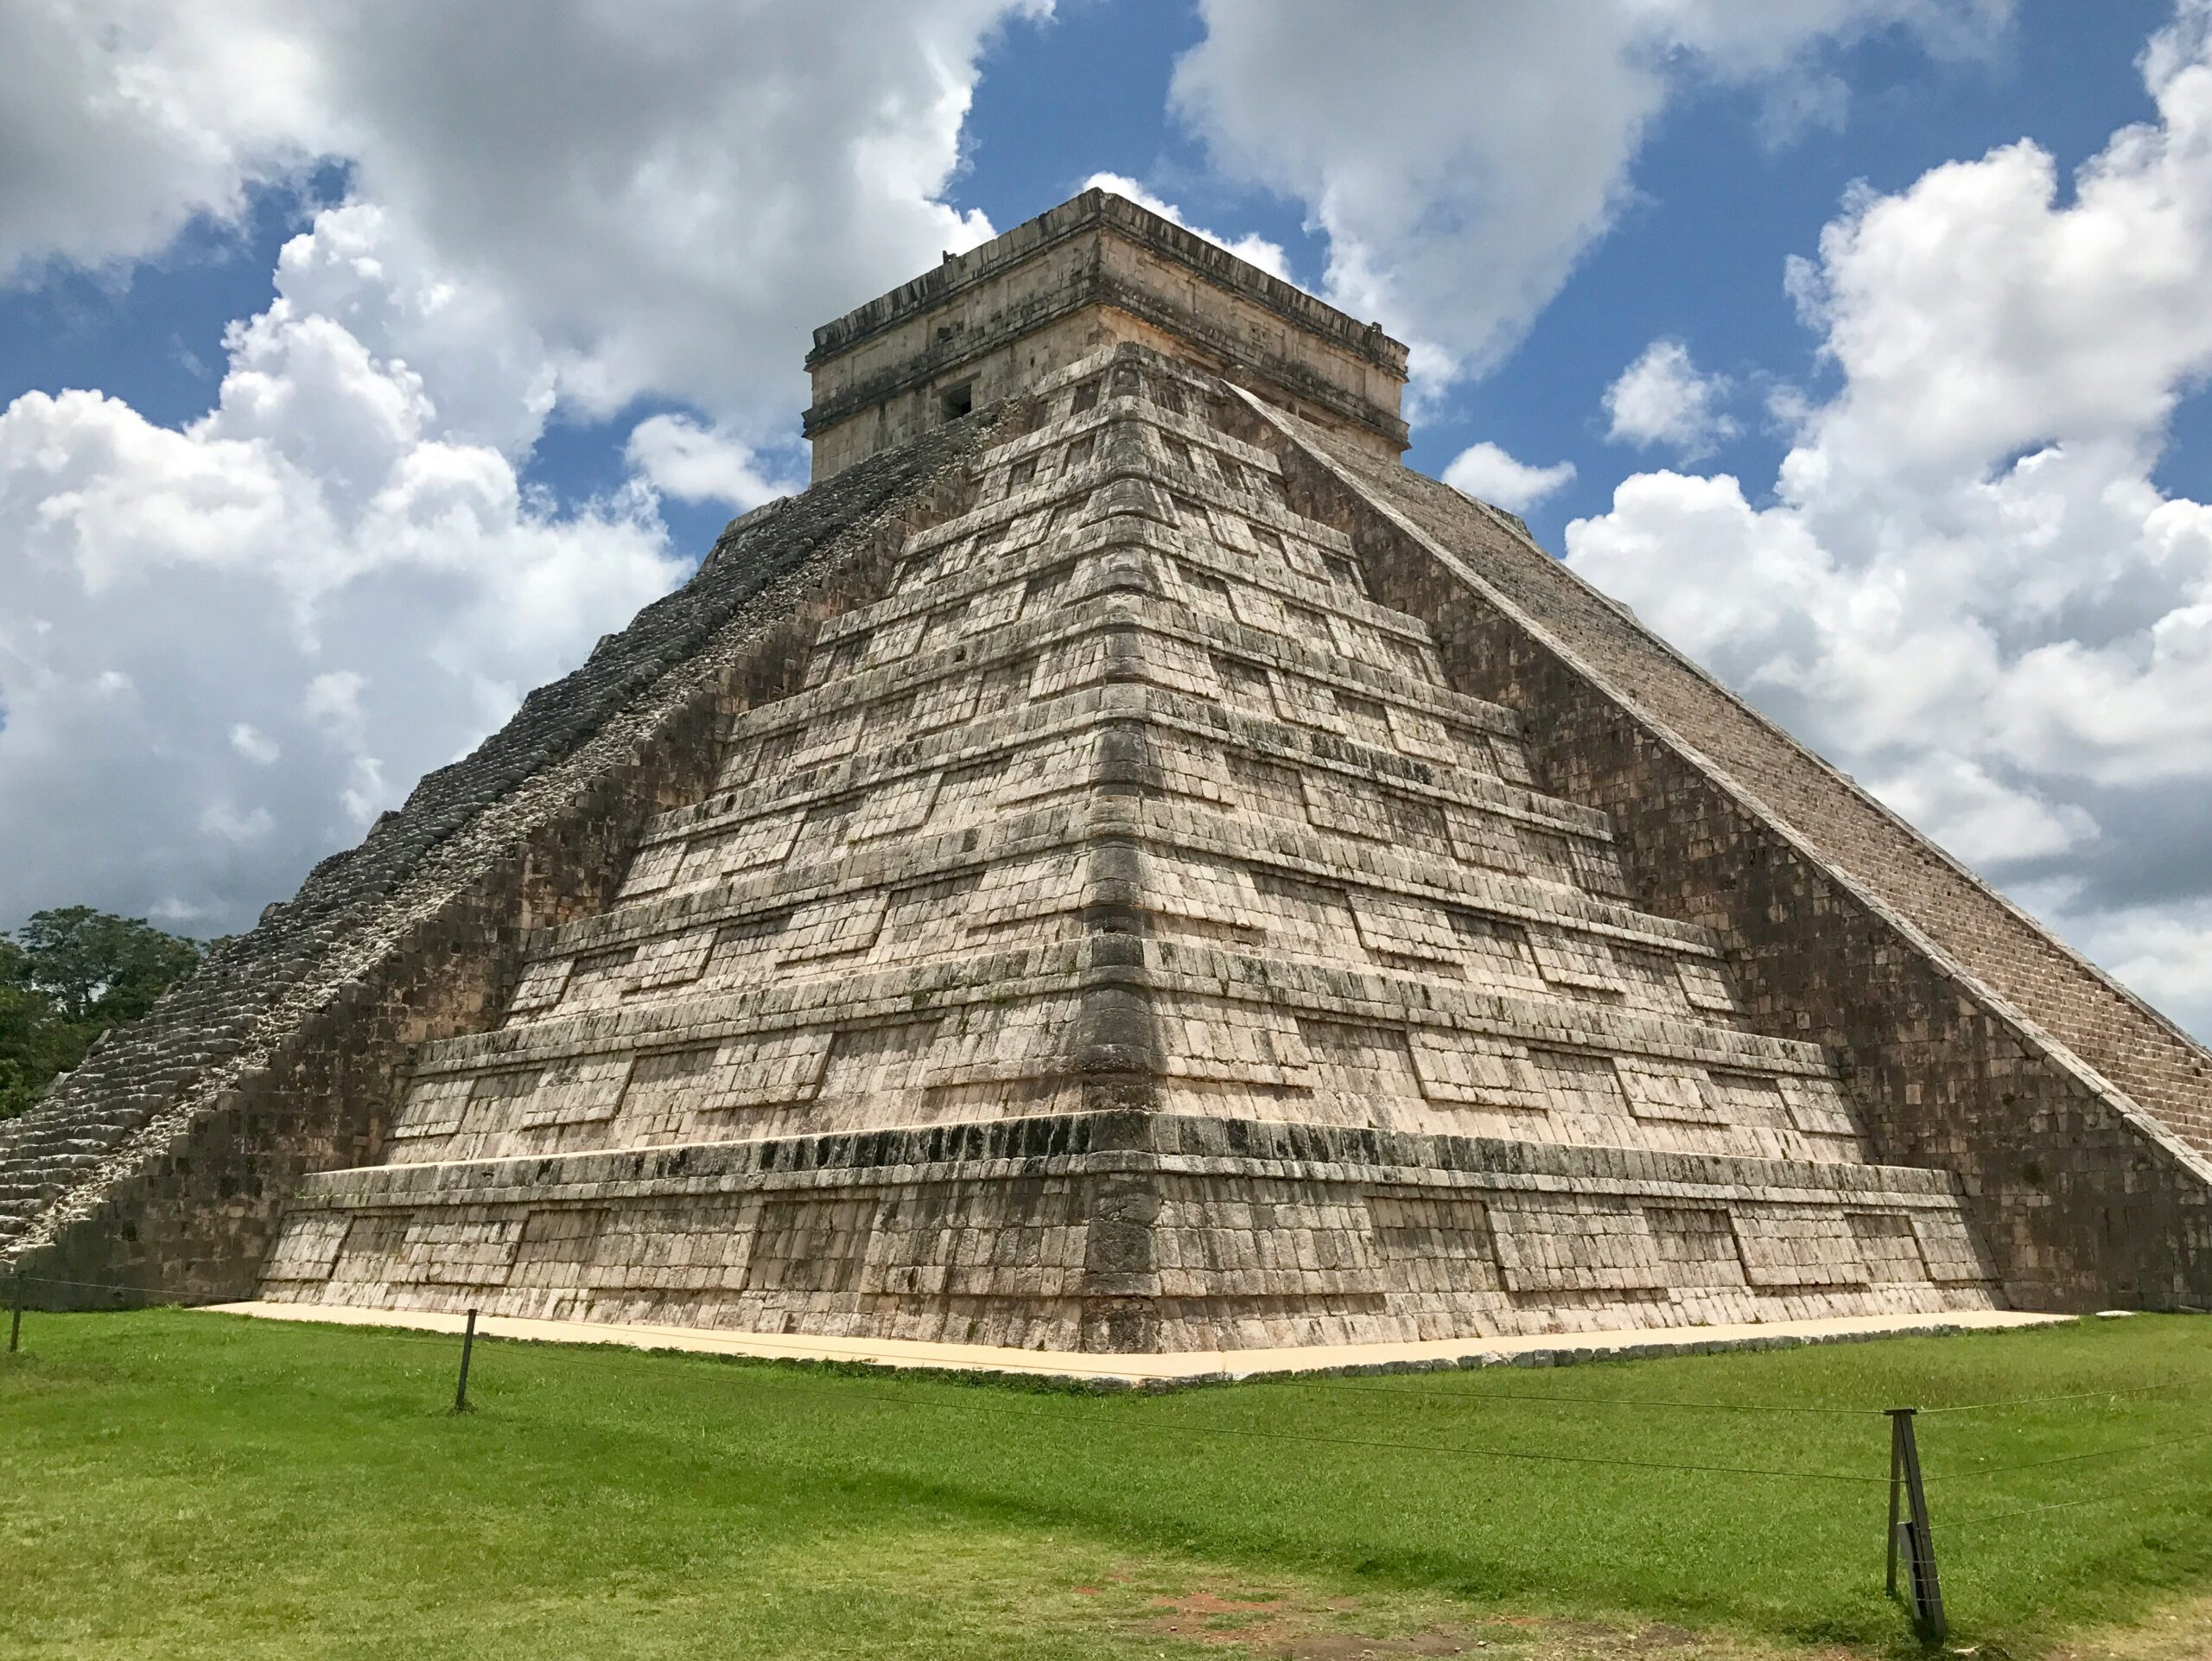 Meksyk - wyjazdy grupowe incentive travel Indywidualne